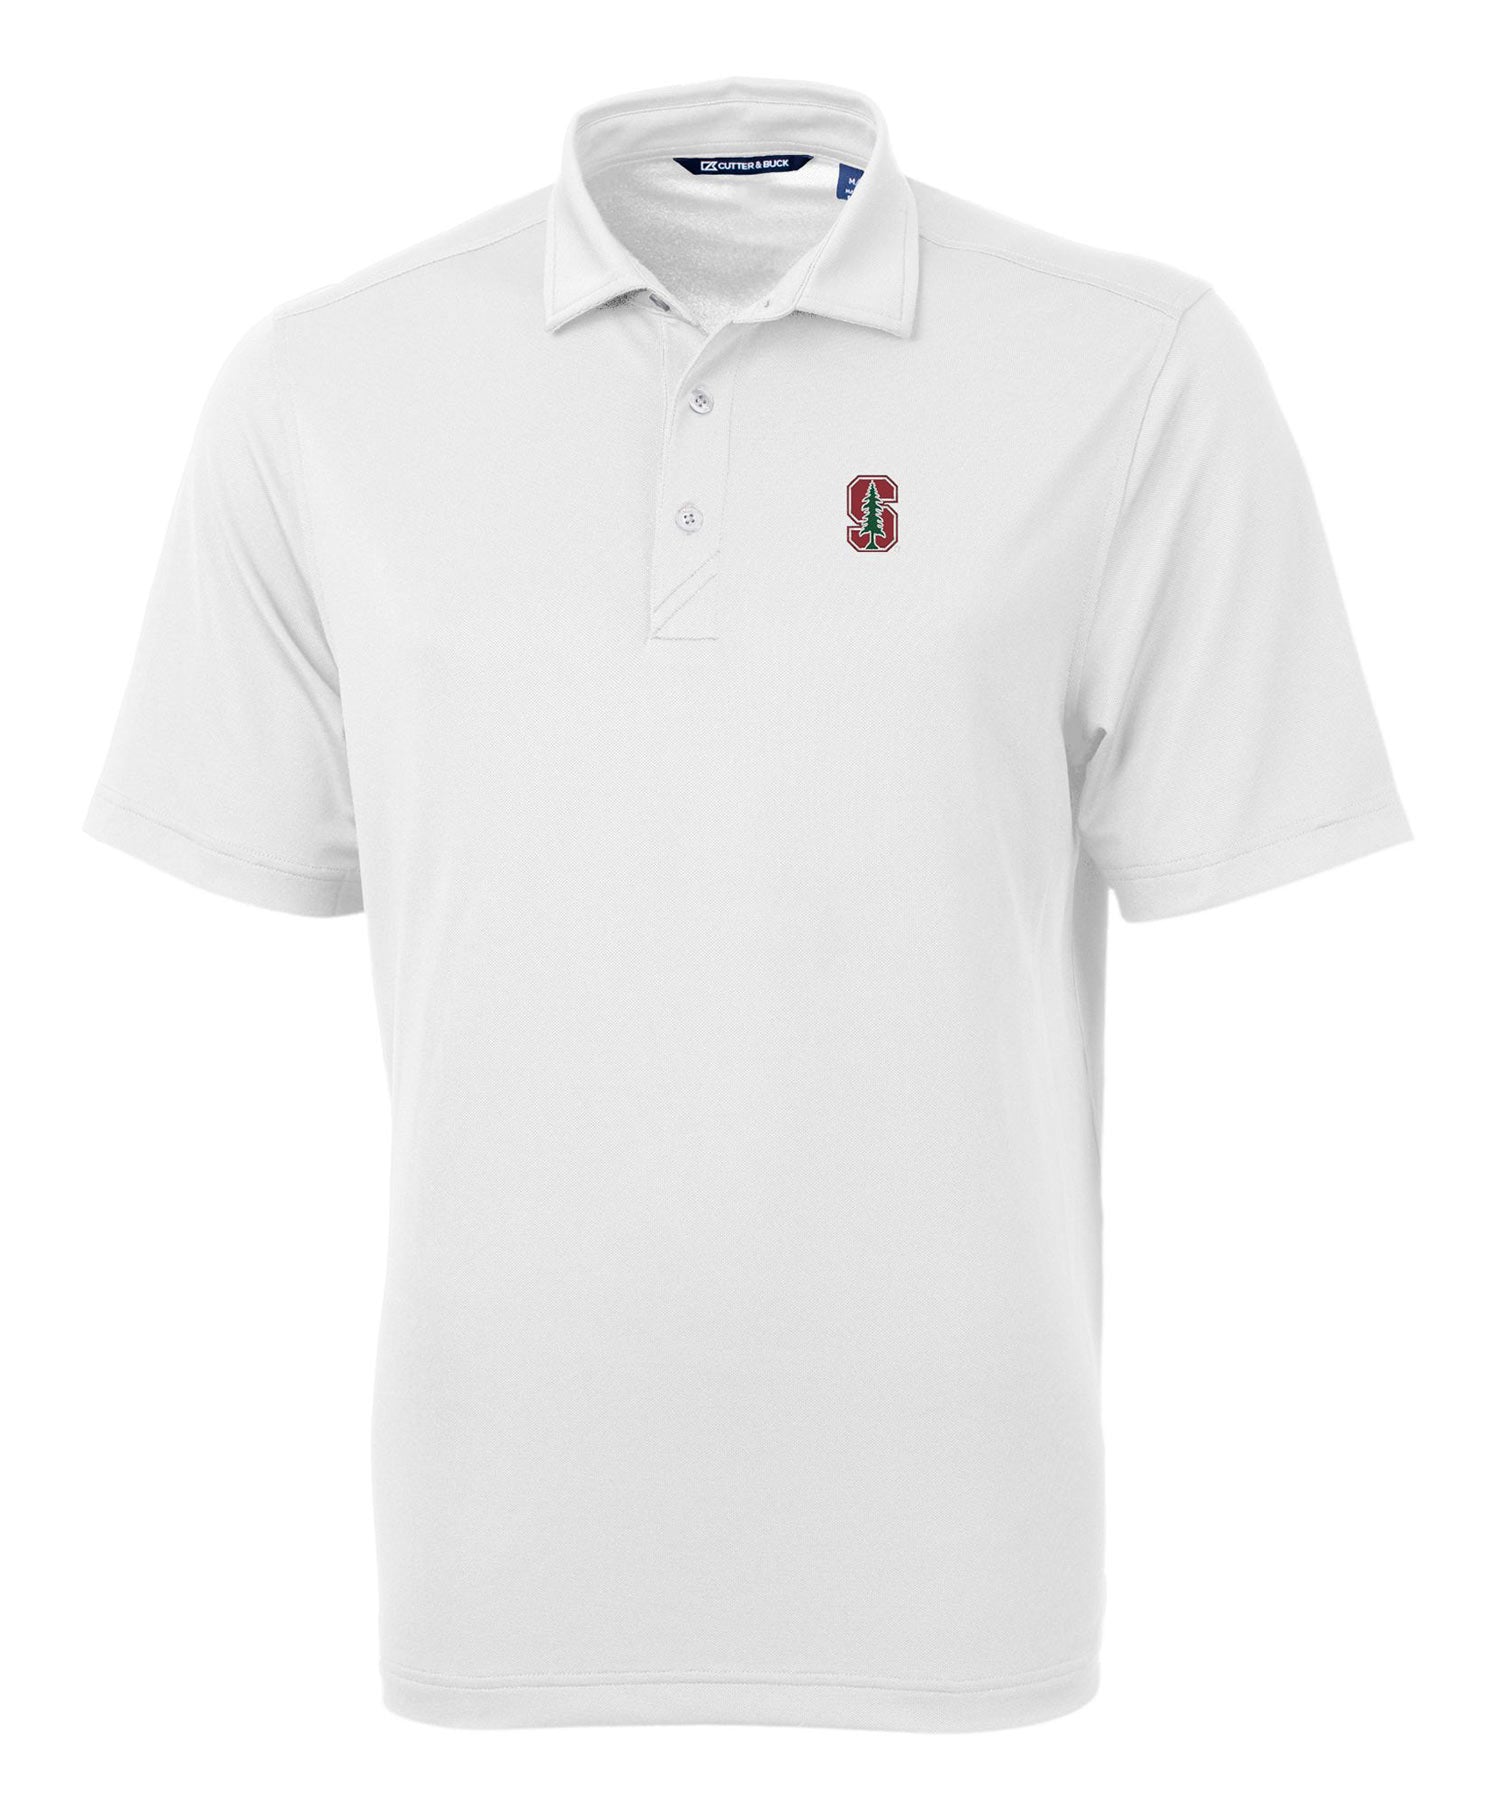 Cutter & Buck Stanford University Cardinal Short Sleeve Polo Knit Shirt, Men's Big & Tall